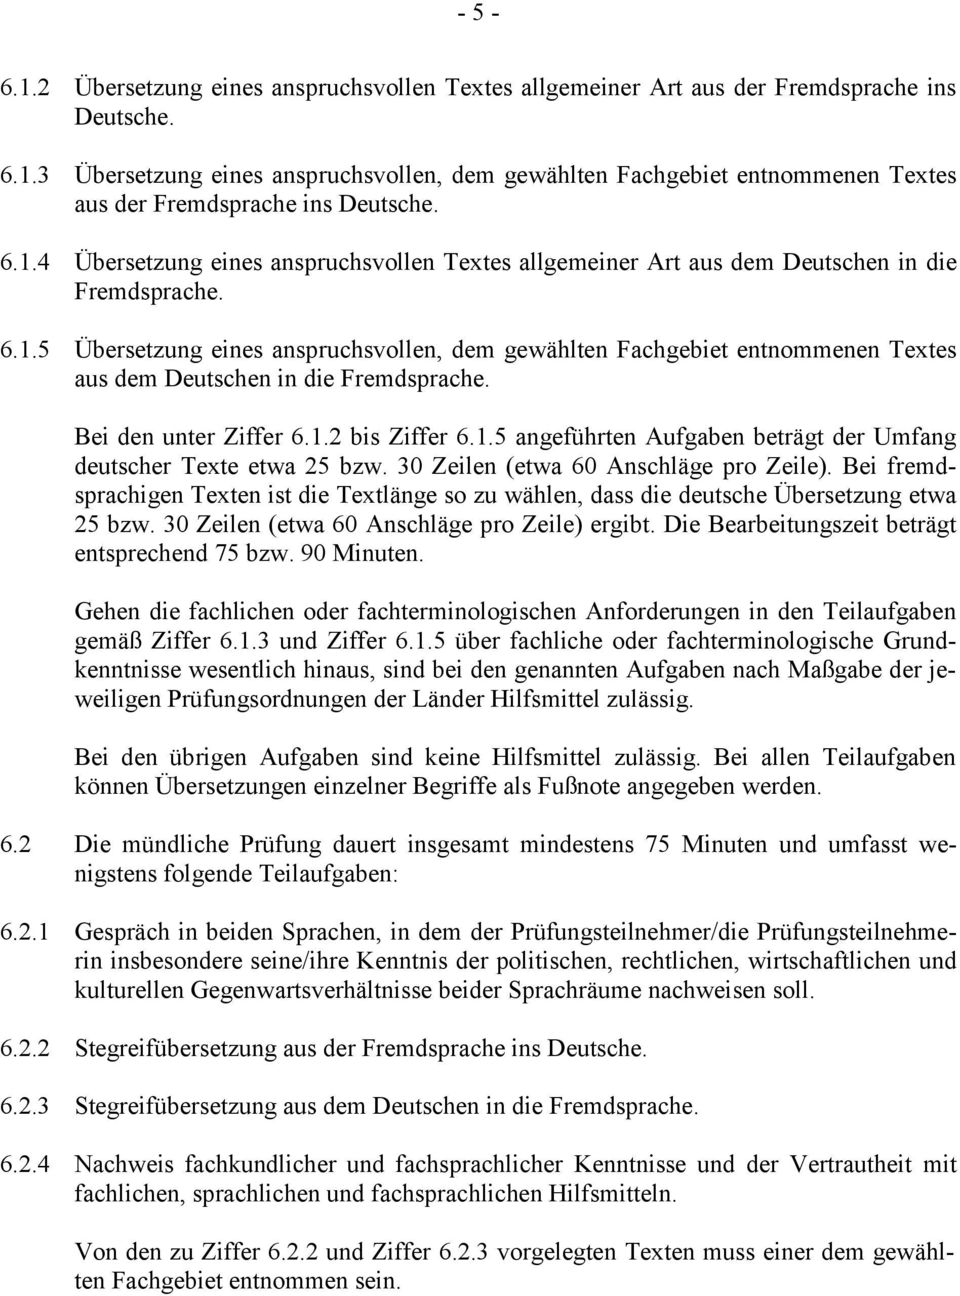 Bei den unter Ziffer 6.1.2 bis Ziffer 6.1.5 angeführten Aufgaben beträgt der Umfang deutscher Texte etwa 25 bzw. 30 Zeilen (etwa 60 Anschläge pro Zeile).